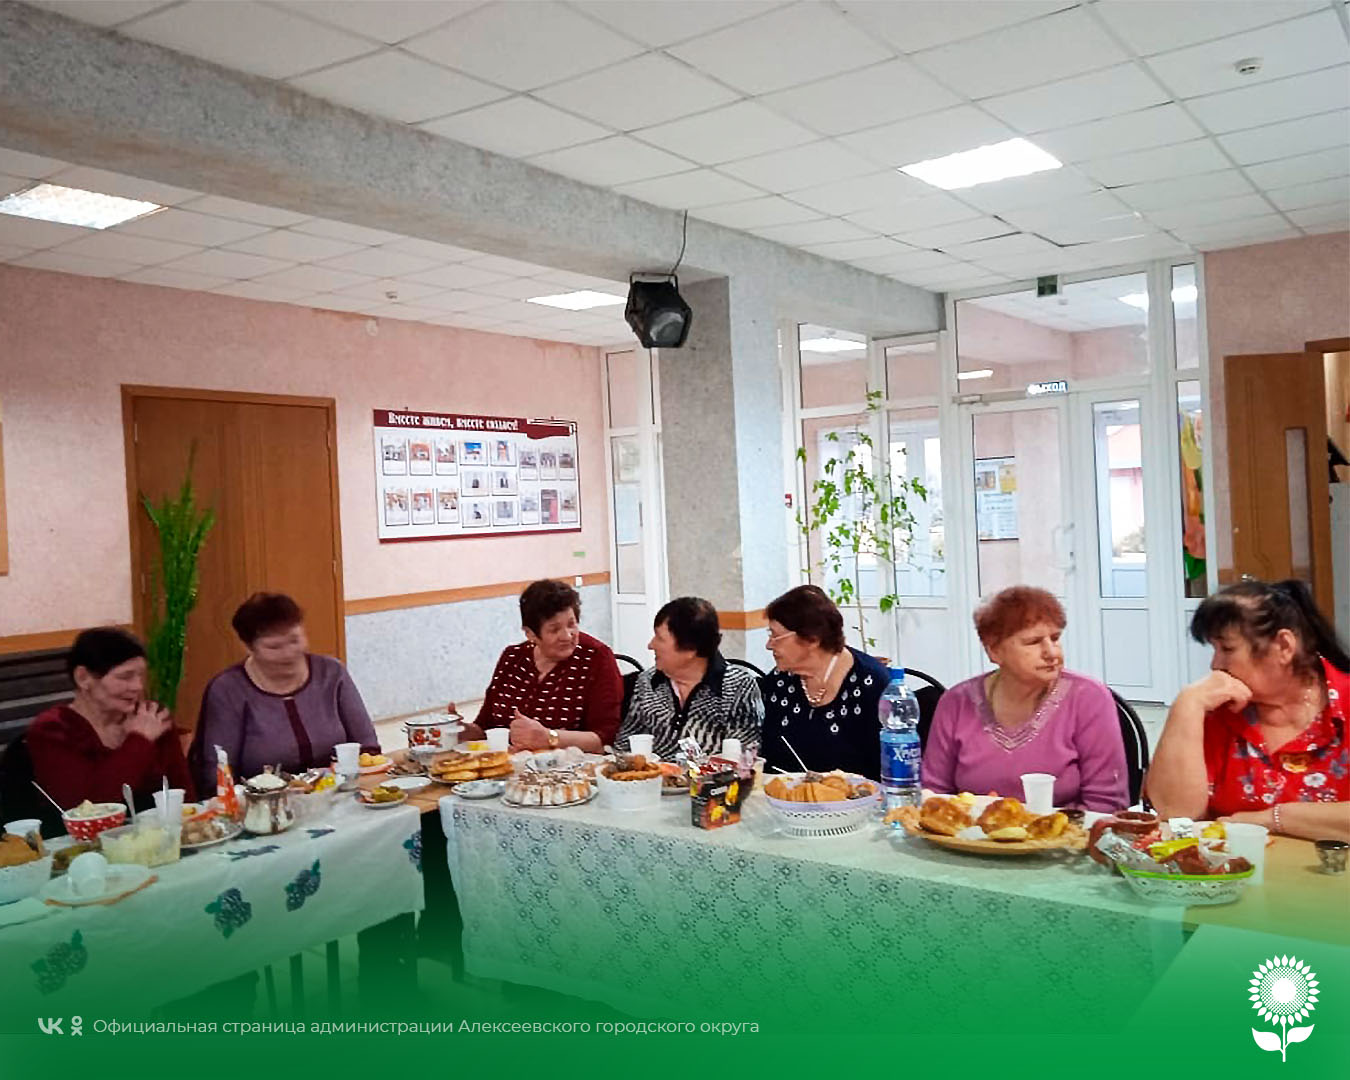 Работники Центра культурного развития села Советское провели для пенсионеров музыкальную встречу «Чайные посиделки».